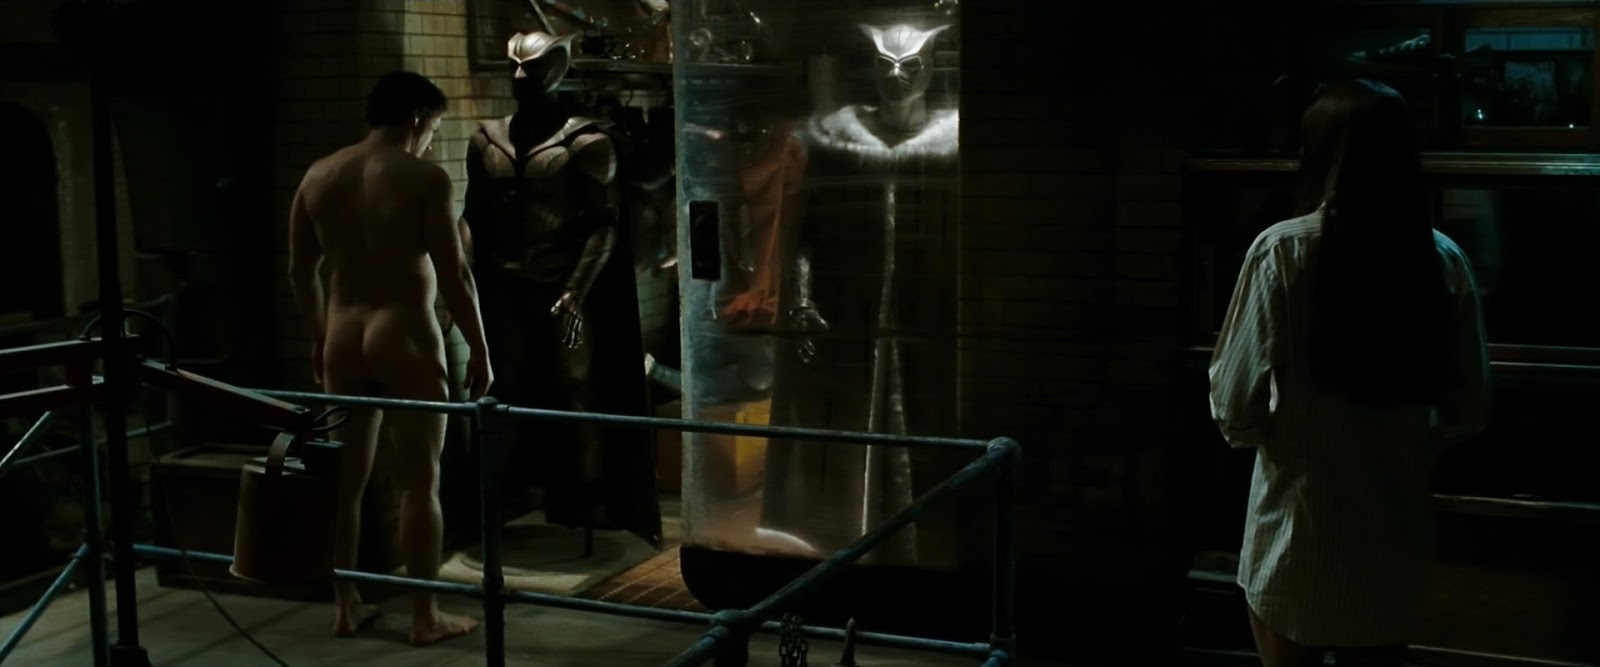 Patrick Wilson nude in Watchmen.